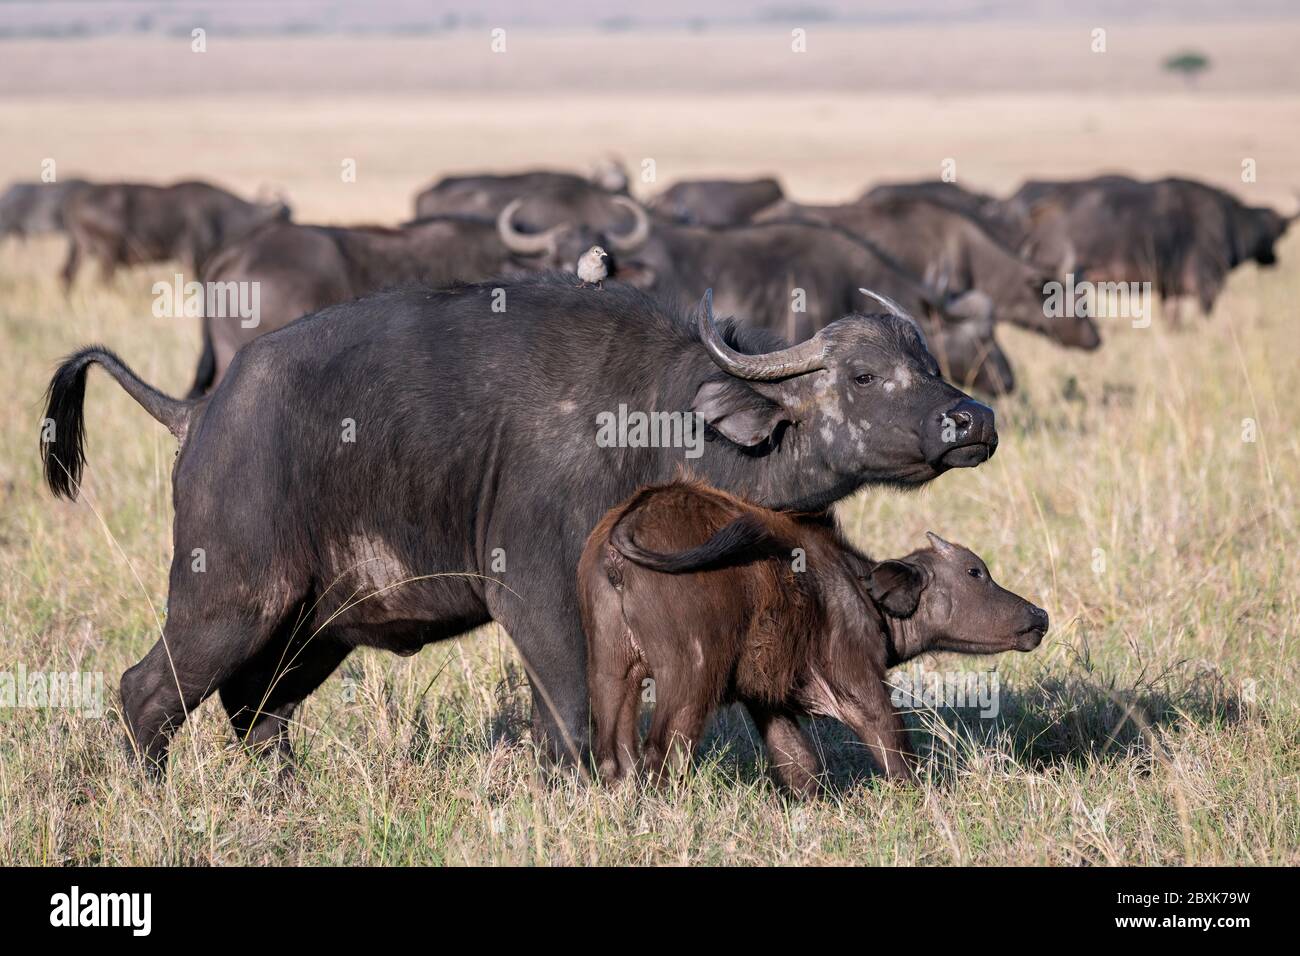 Mère Cape Buffalo avec veau. Le veau frotte contre sa mère. Le reste du troupeau peut être vu en arrière-plan. Banque D'Images